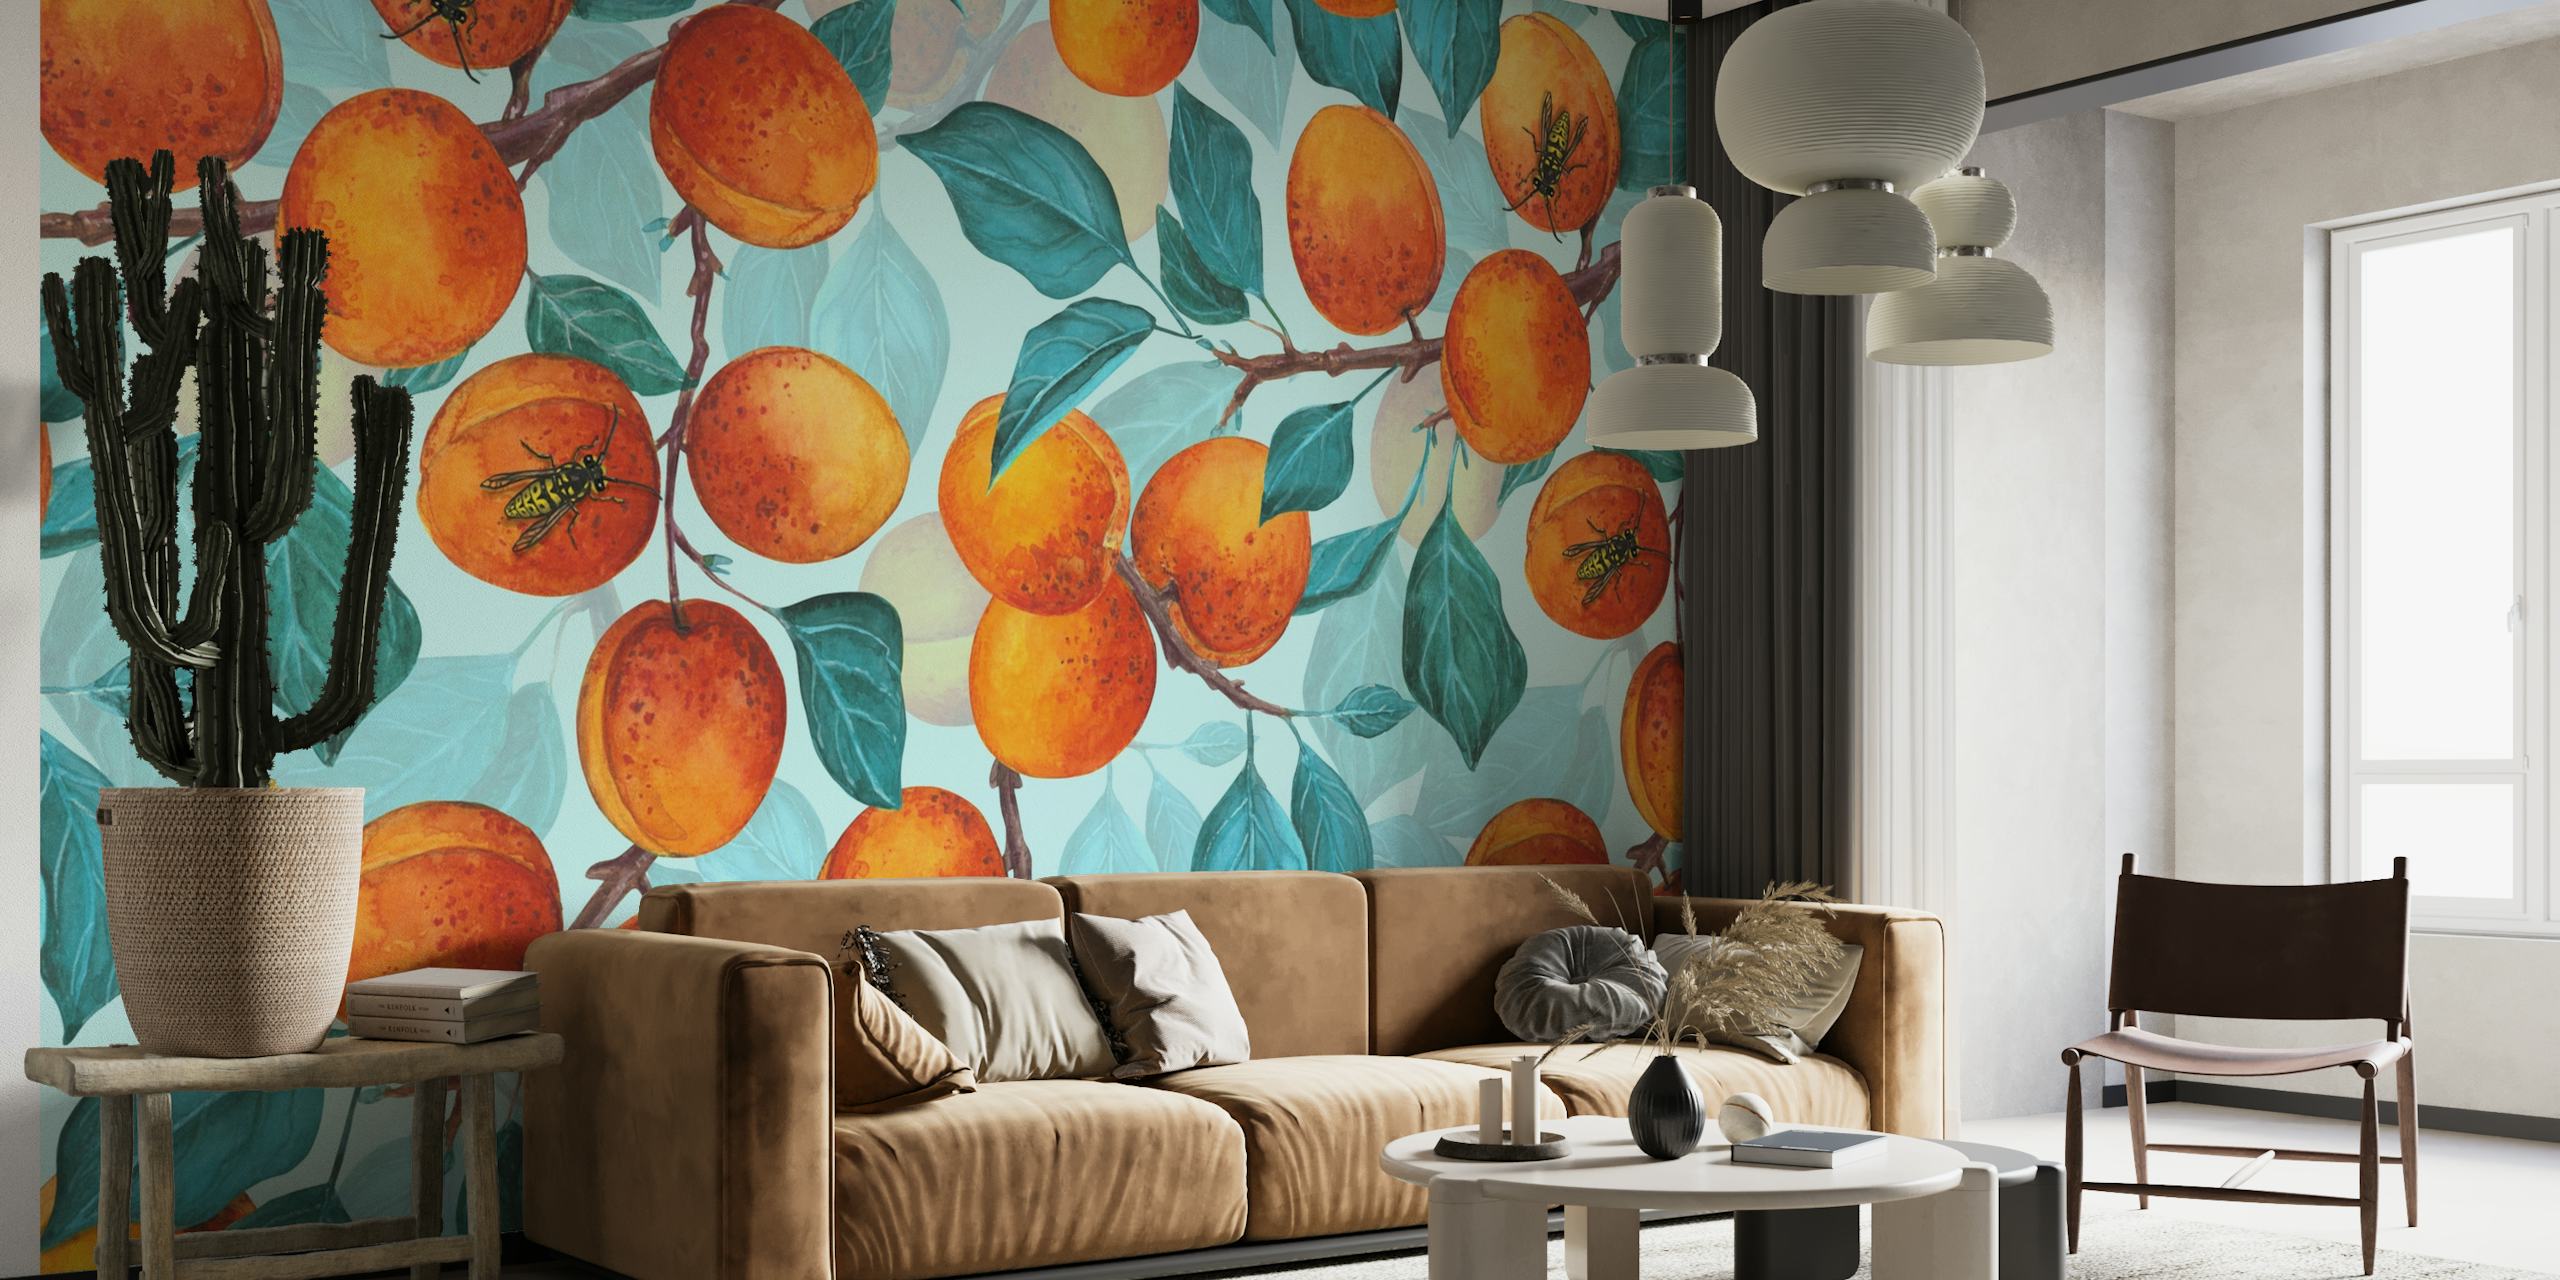 Apricot garden 3 wallpaper